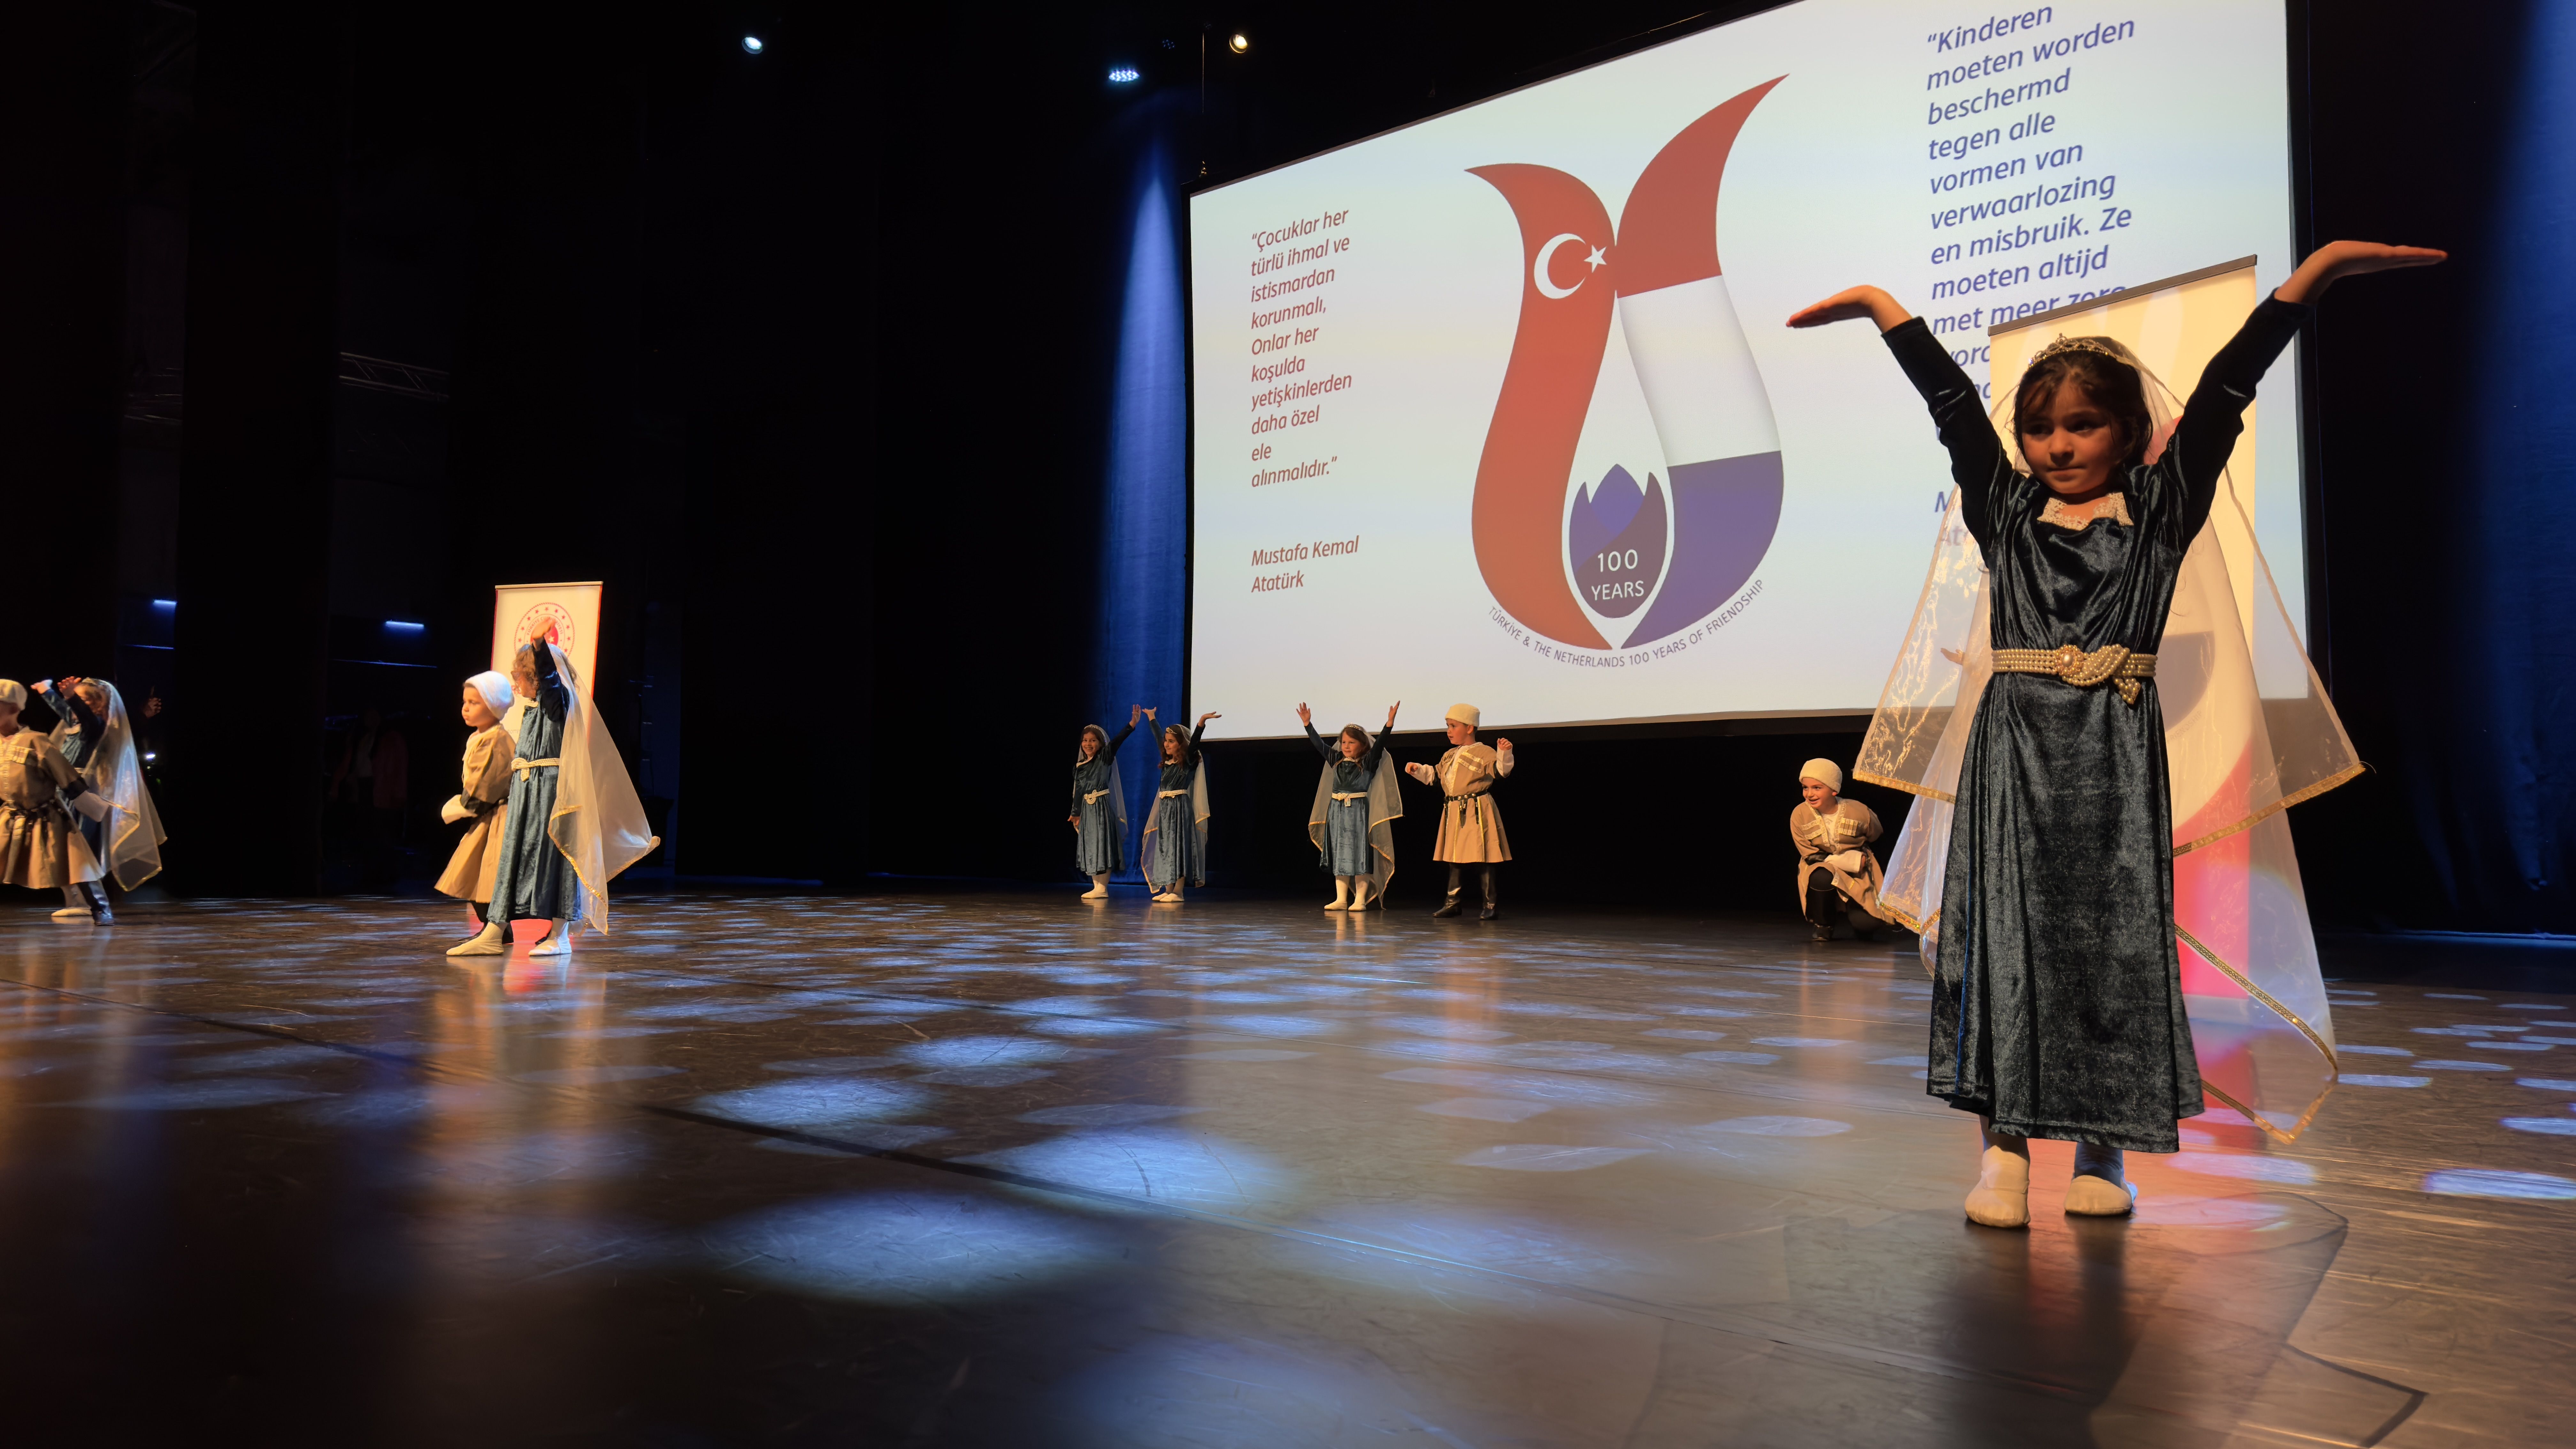 Nederland viert de honderdste verjaardag van het vriendschapsverdrag met Turkije